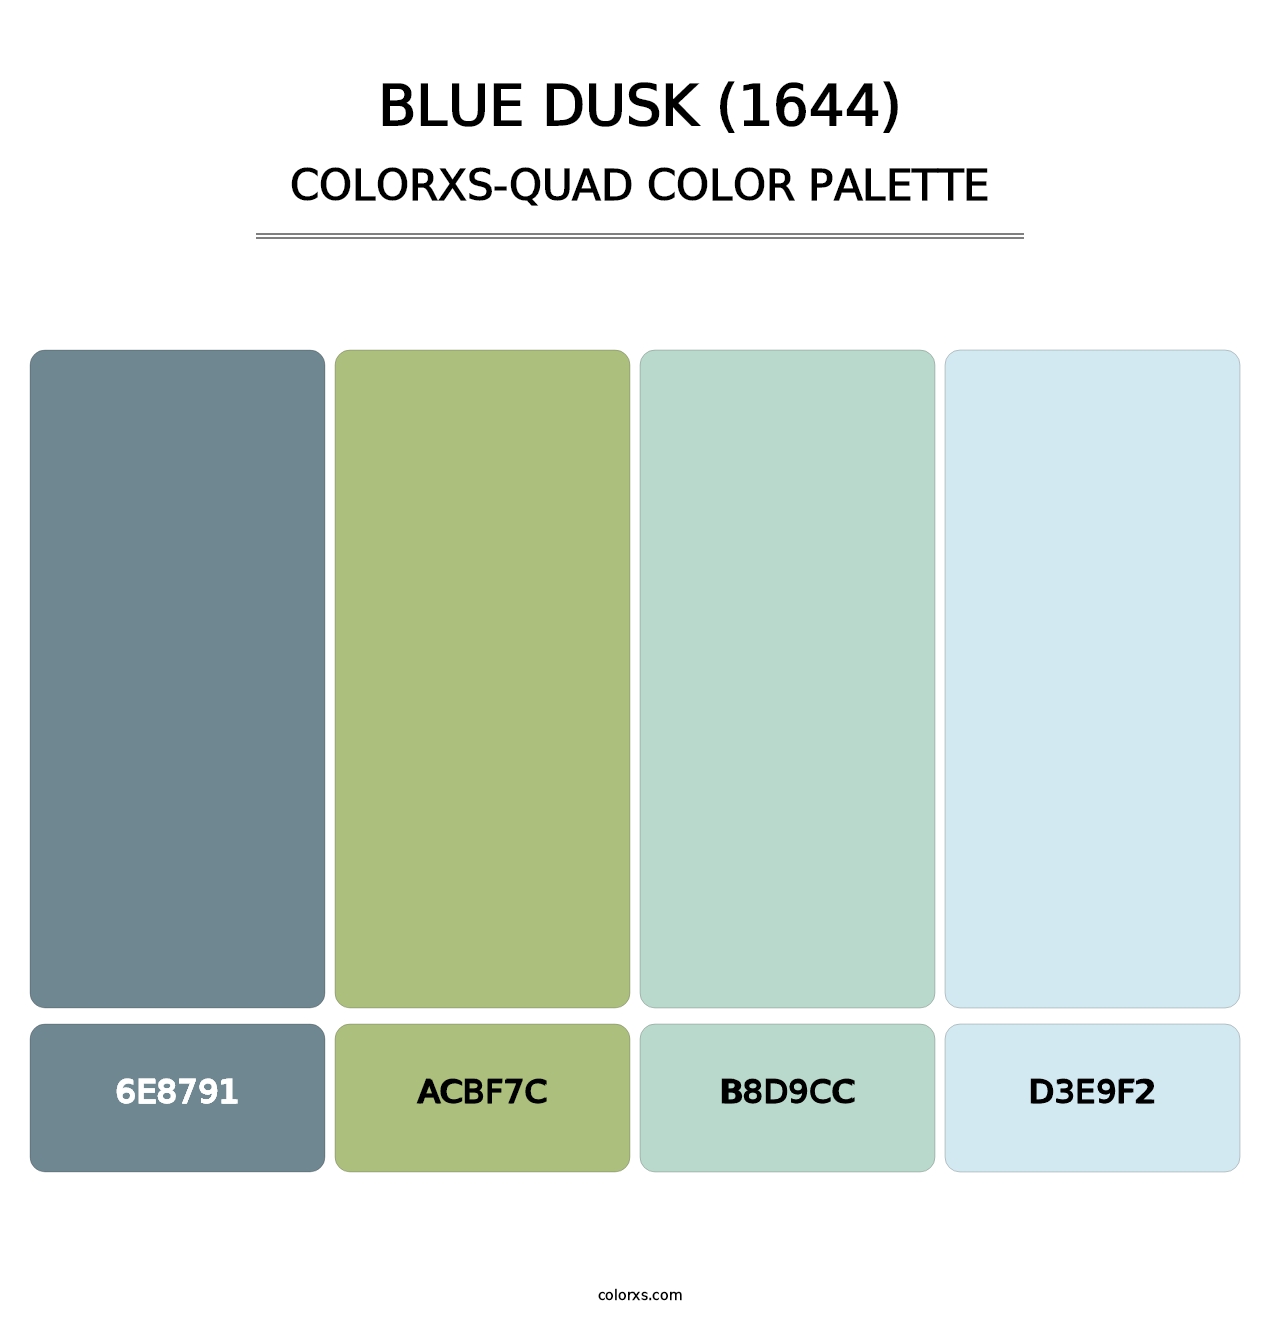 Blue Dusk (1644) - Colorxs Quad Palette